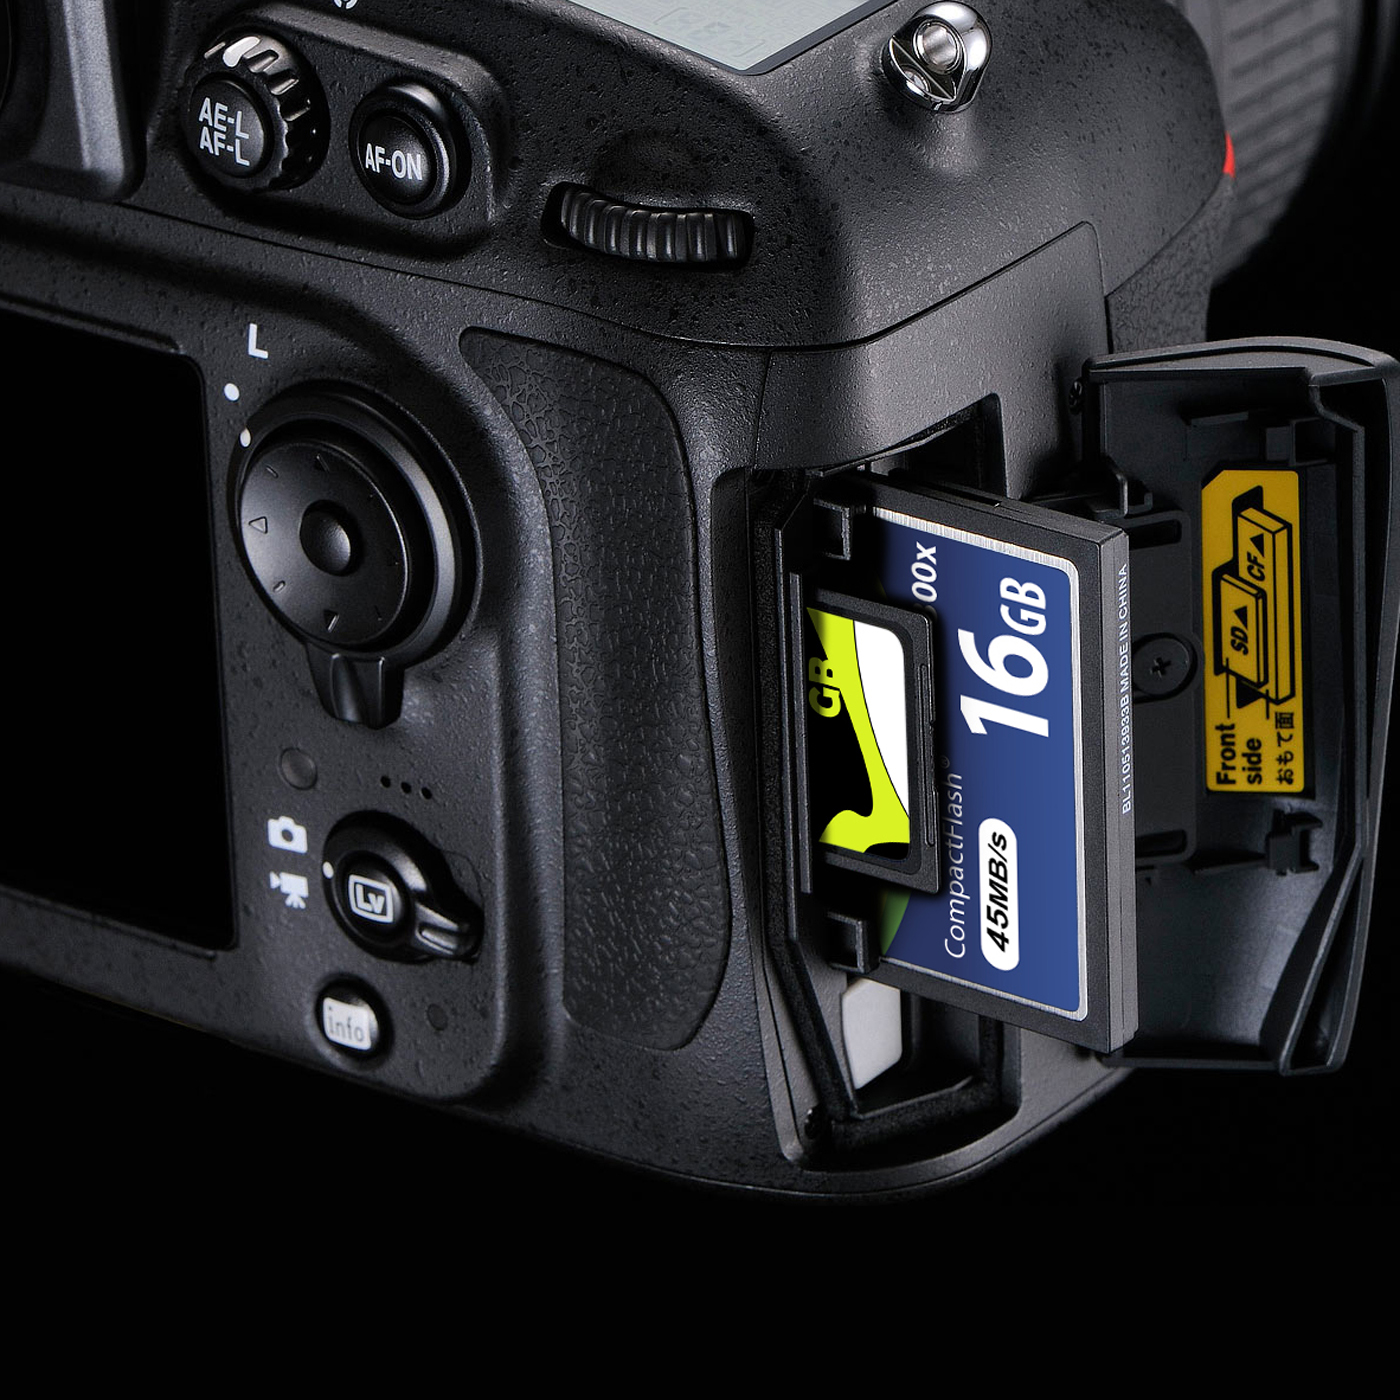 8GB-16GB CF Compact Flash Speicherkarte Extrem schnelles 200x 300x Für Kamera